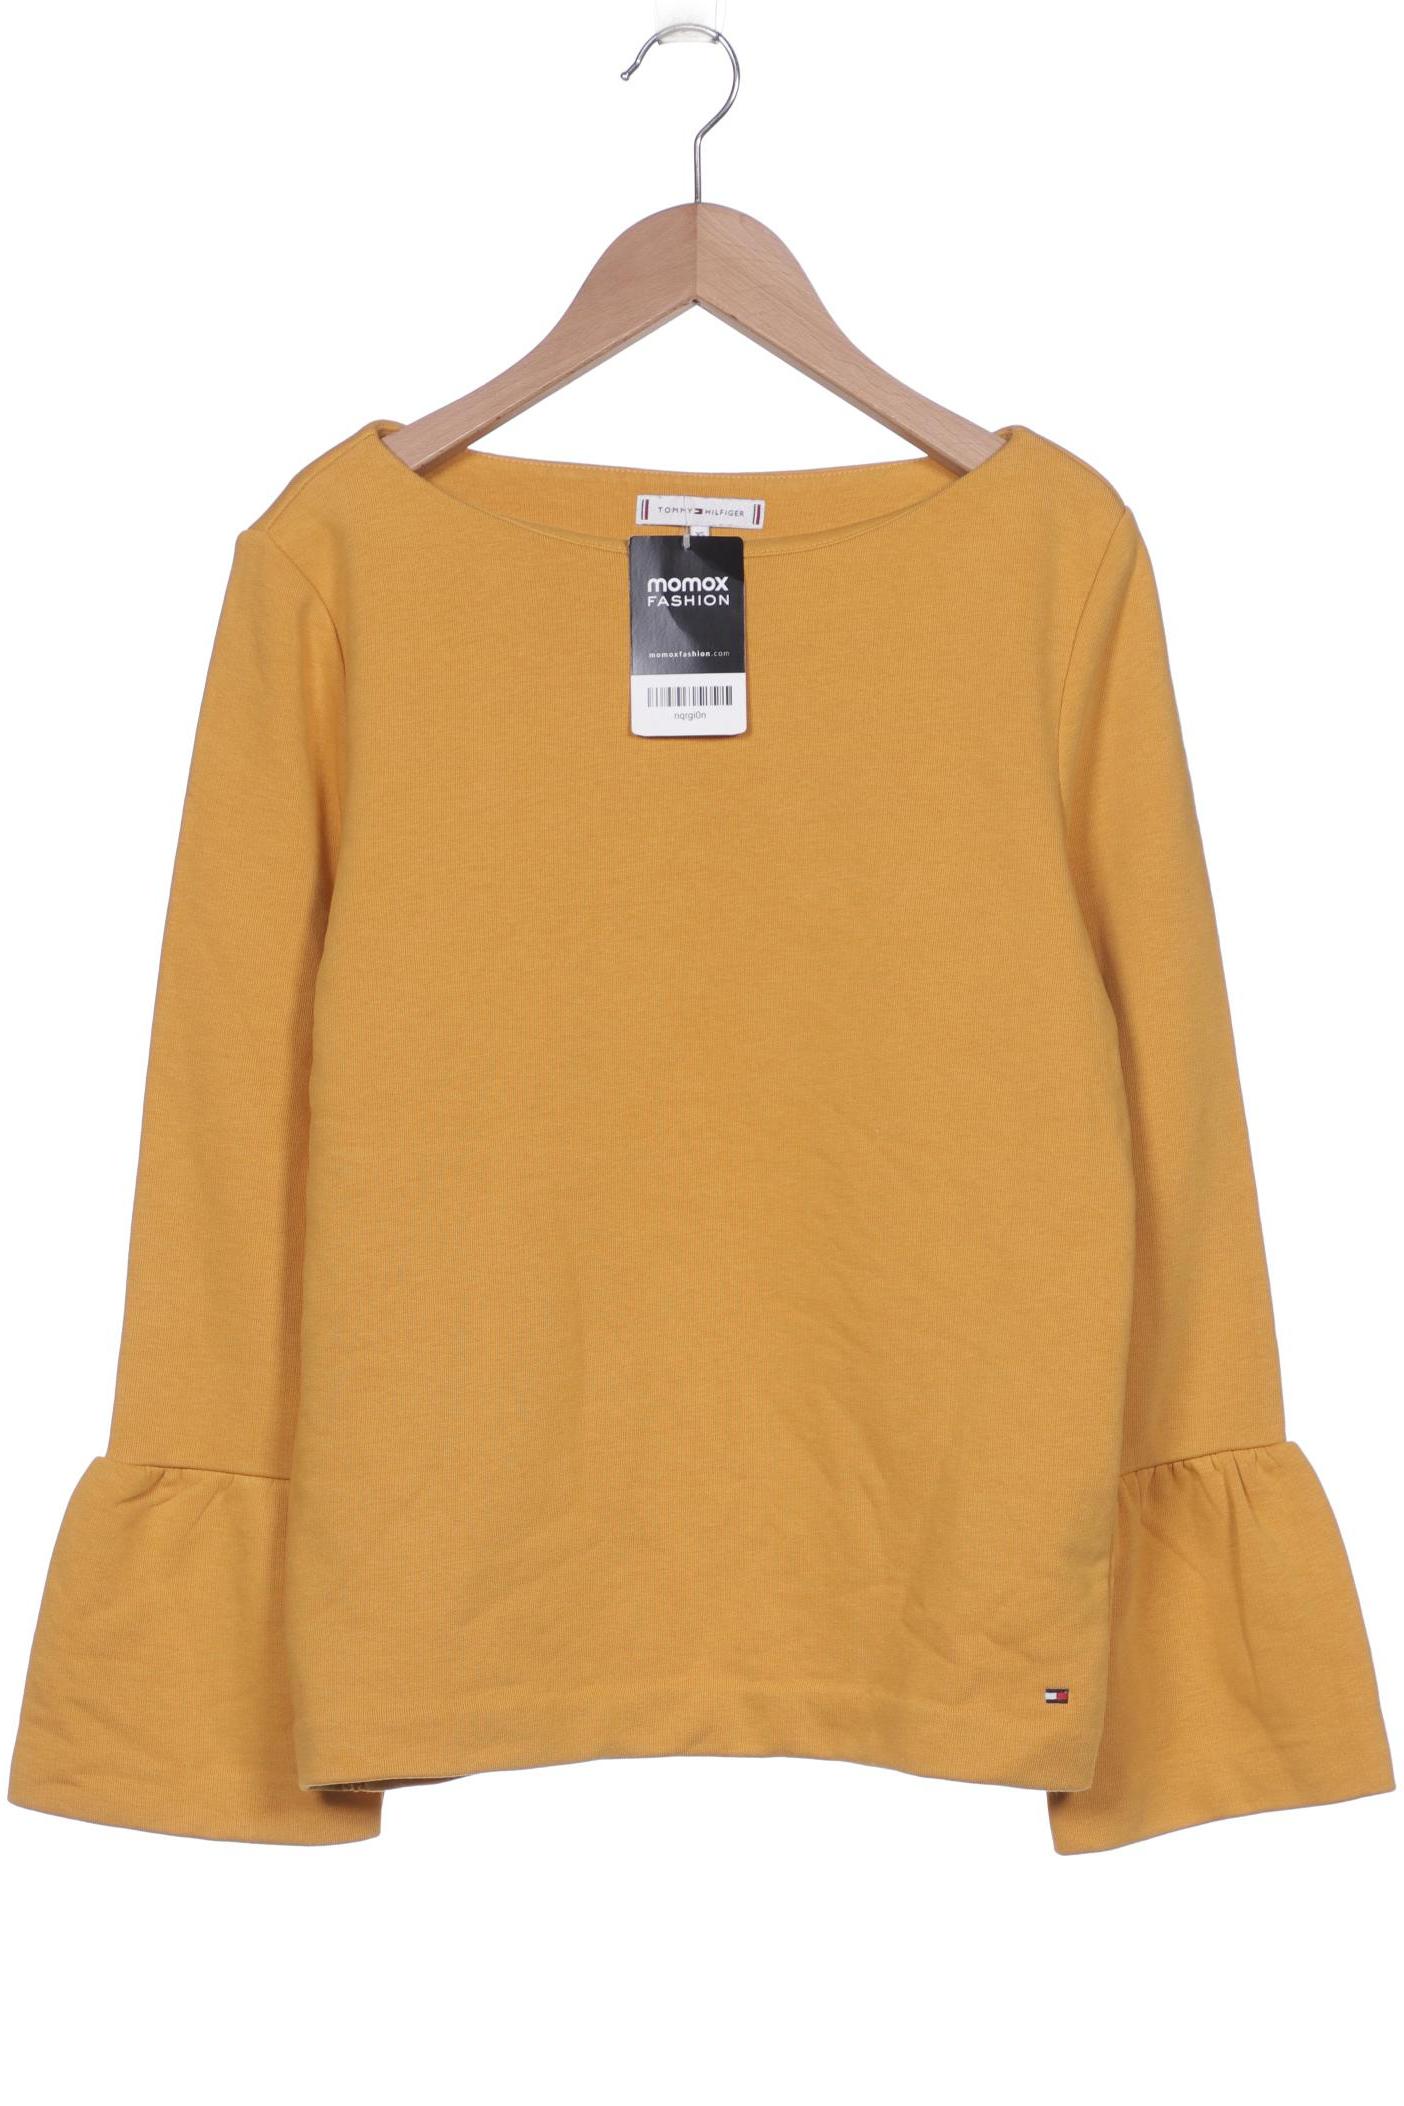 Tommy Hilfiger Damen Sweatshirt, orange von Tommy Hilfiger